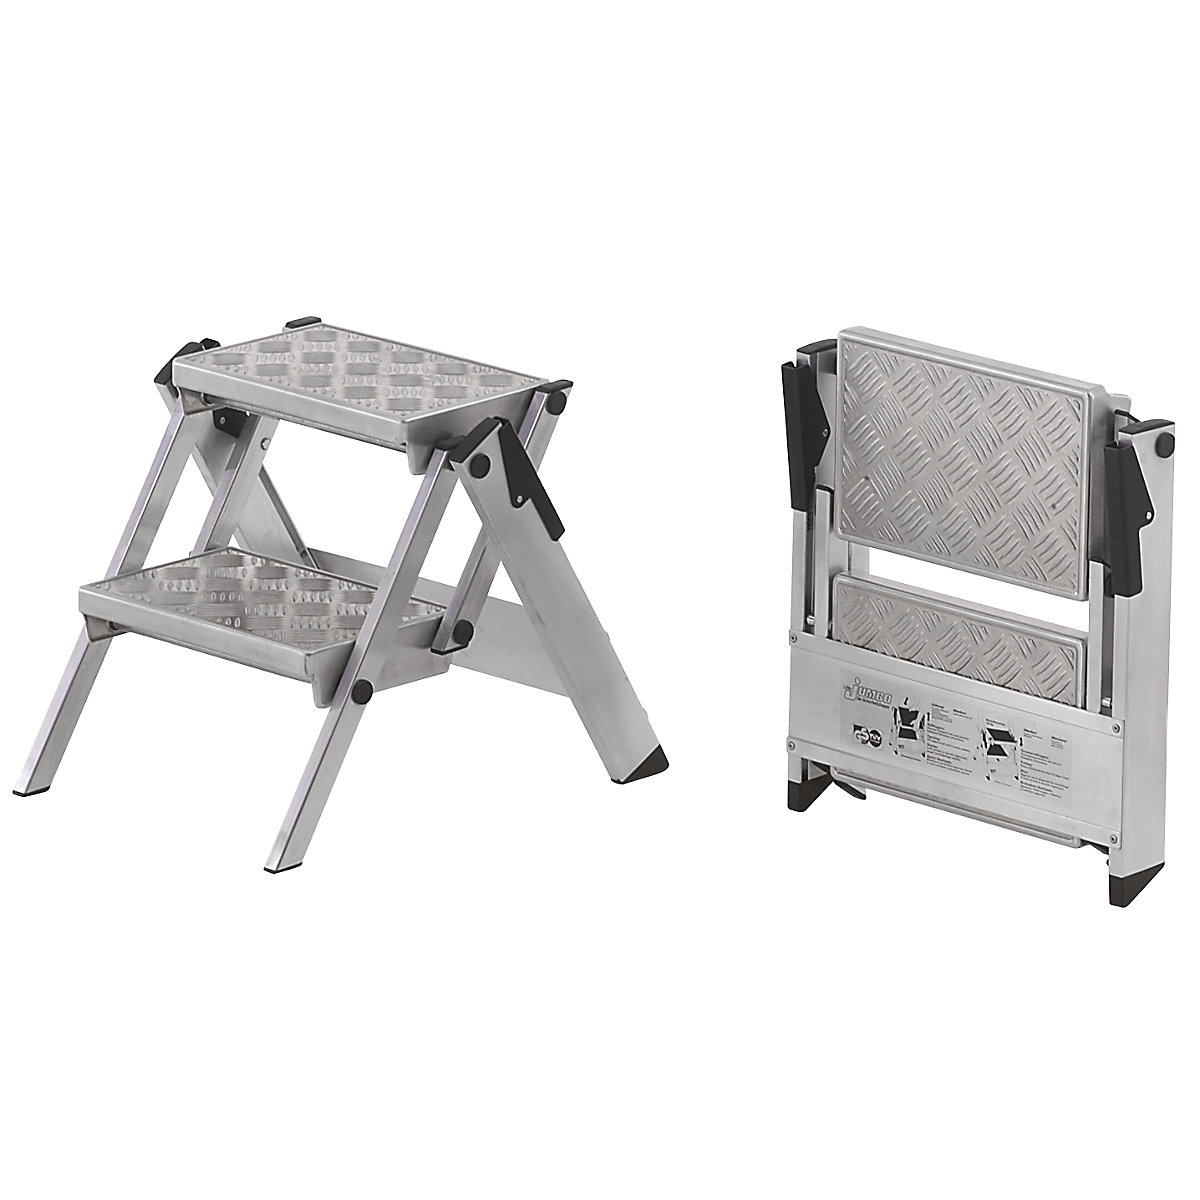 Escalera plegable de aluminio: peldaños de aluminio acanalado